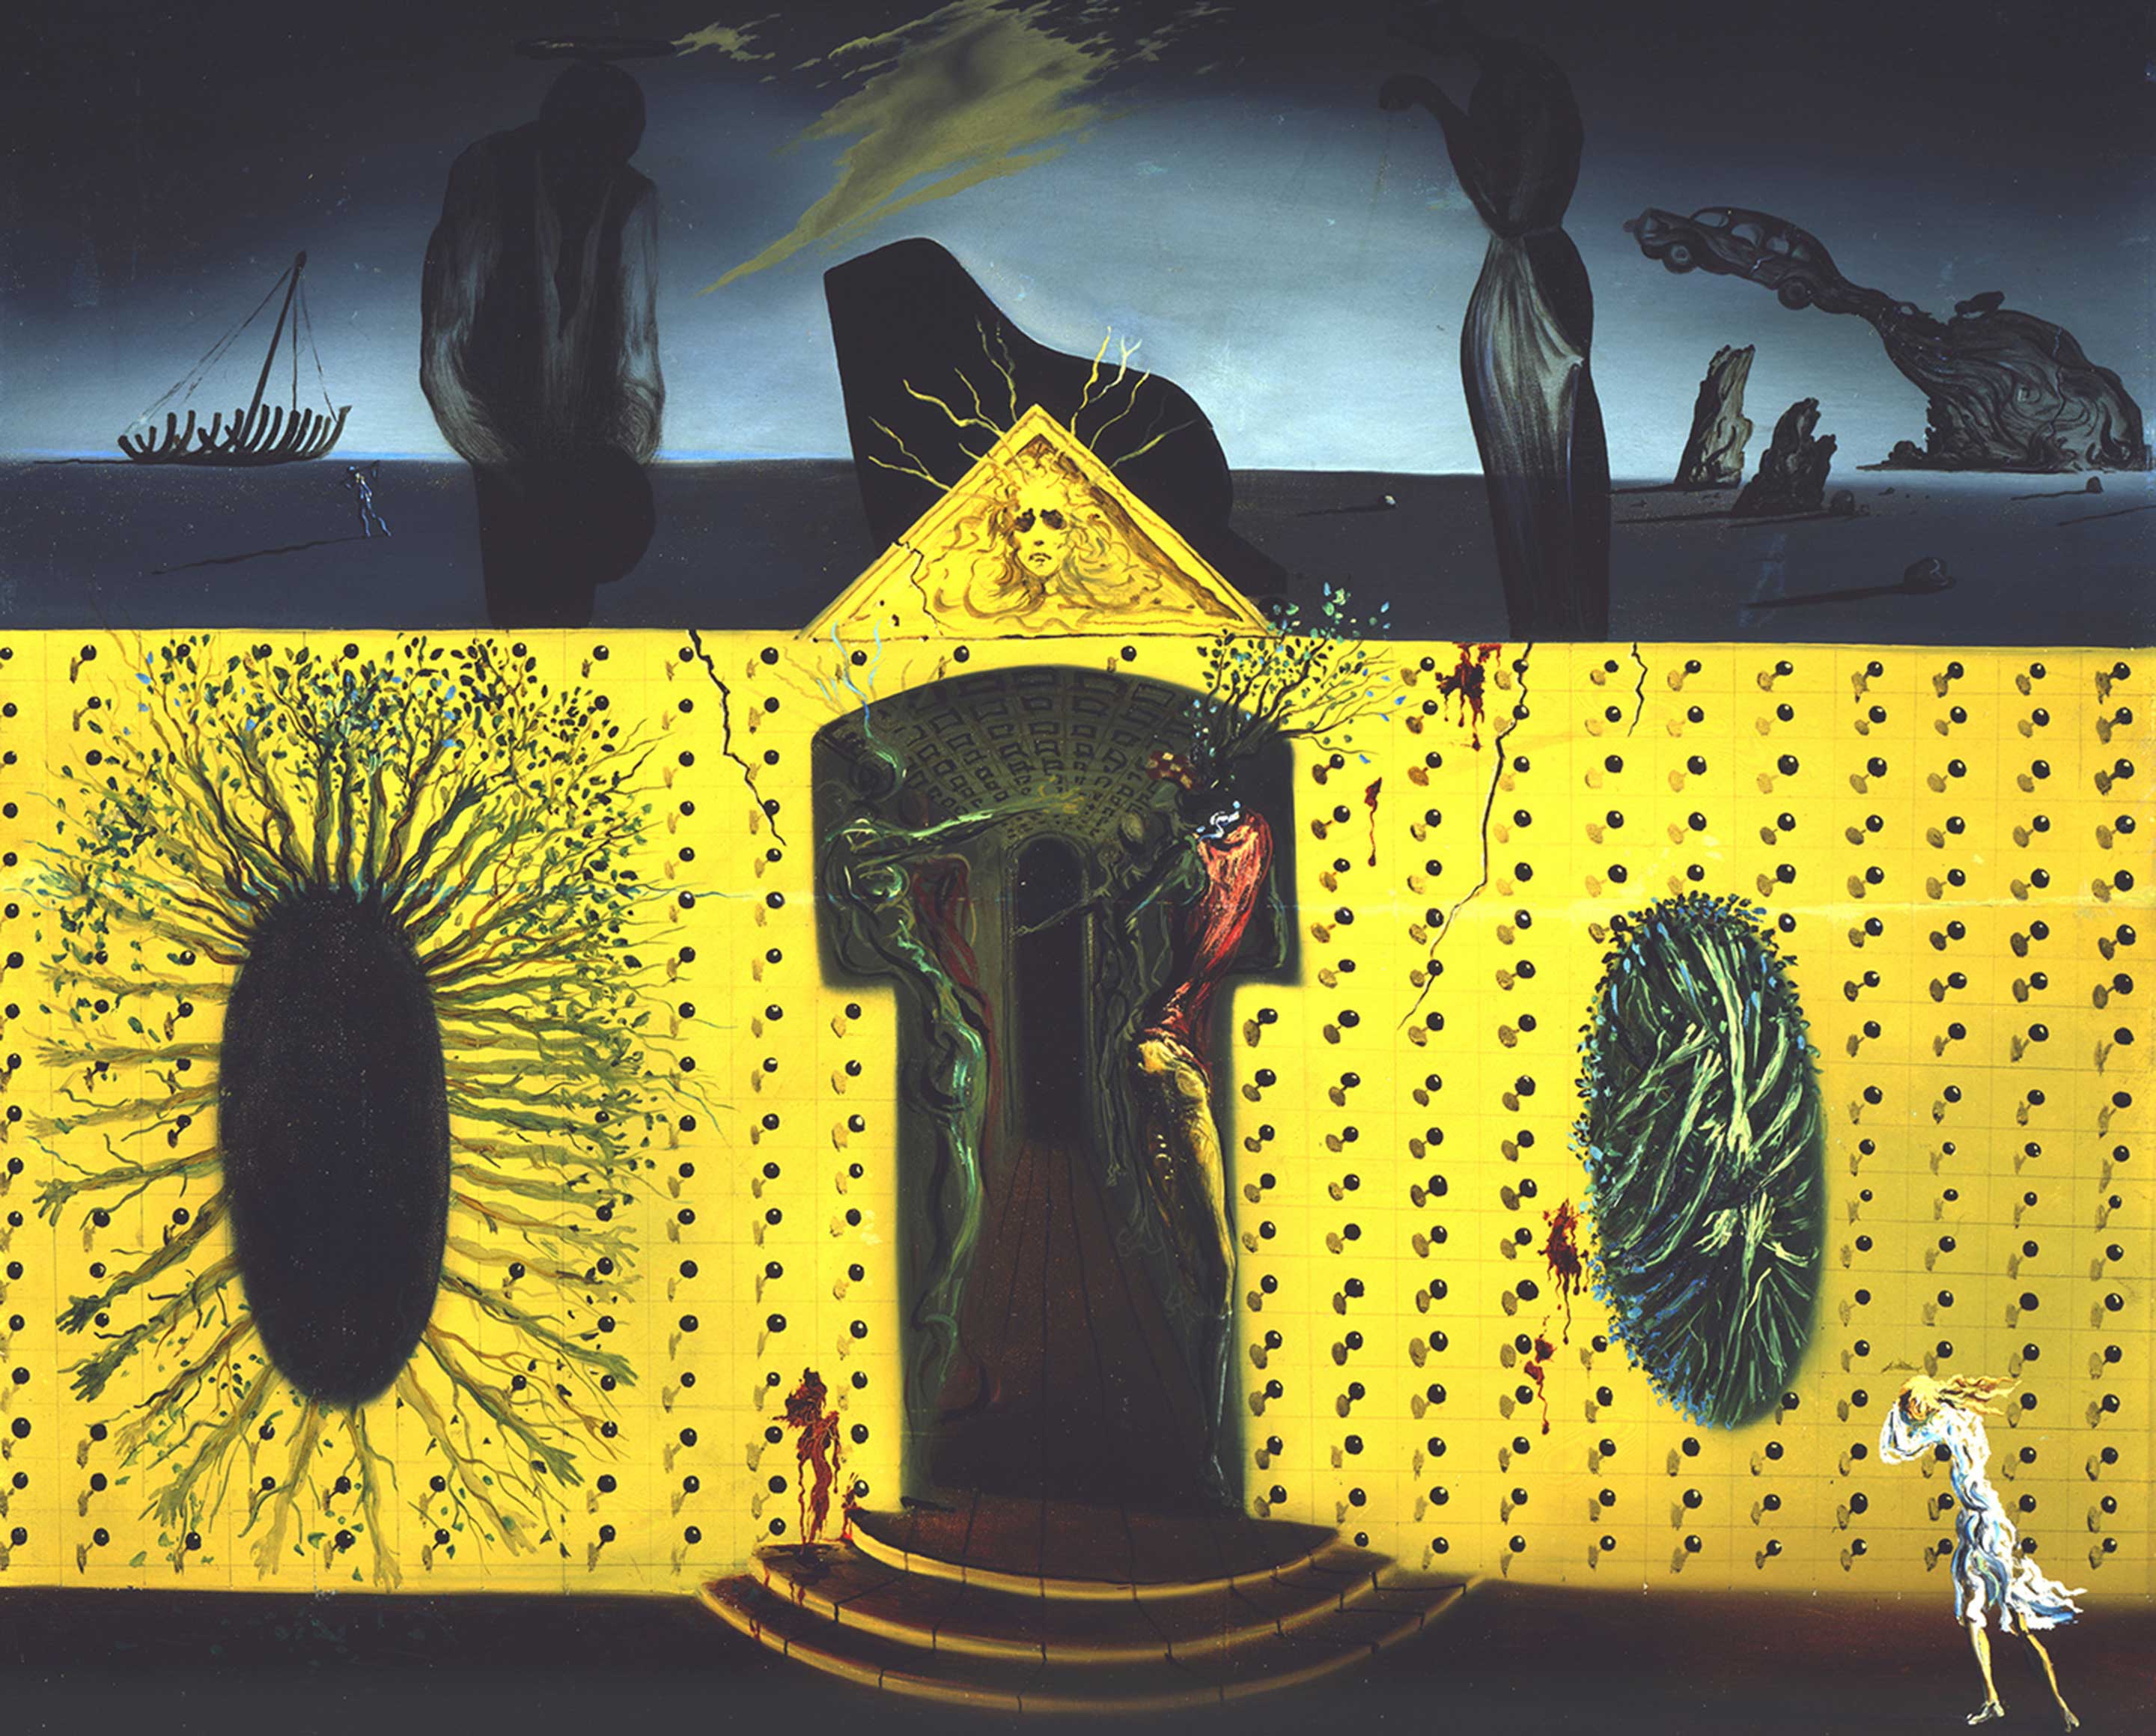 サルバドール・ダリ 《狂えるトリスタン》 1938 年、45.7×54.9 cm、板に油彩、サルバドール・ダリ美術館蔵 Collection of the Salvador Dalí Museum, St. Petersburg, Florida Worldwide rights: © Salvador Dalí, Fundació Gala-Salvador Dalí, JASPAR, Japan, 2016. In the USA: ©Salvador Dalí Museum Inc. St. Petersburg, Florida, 2016.